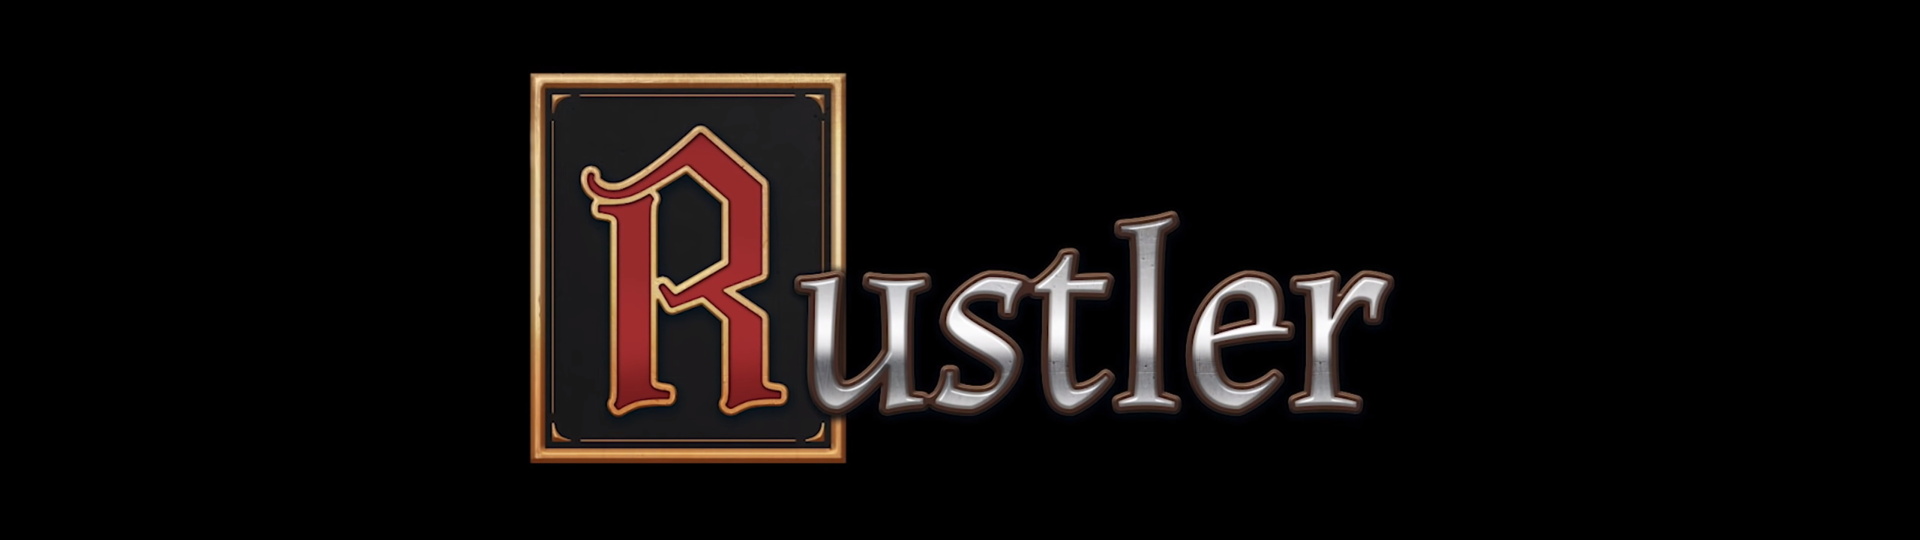 Středověké GTA dorazí pod názvem Rustler ještě letos | Videa